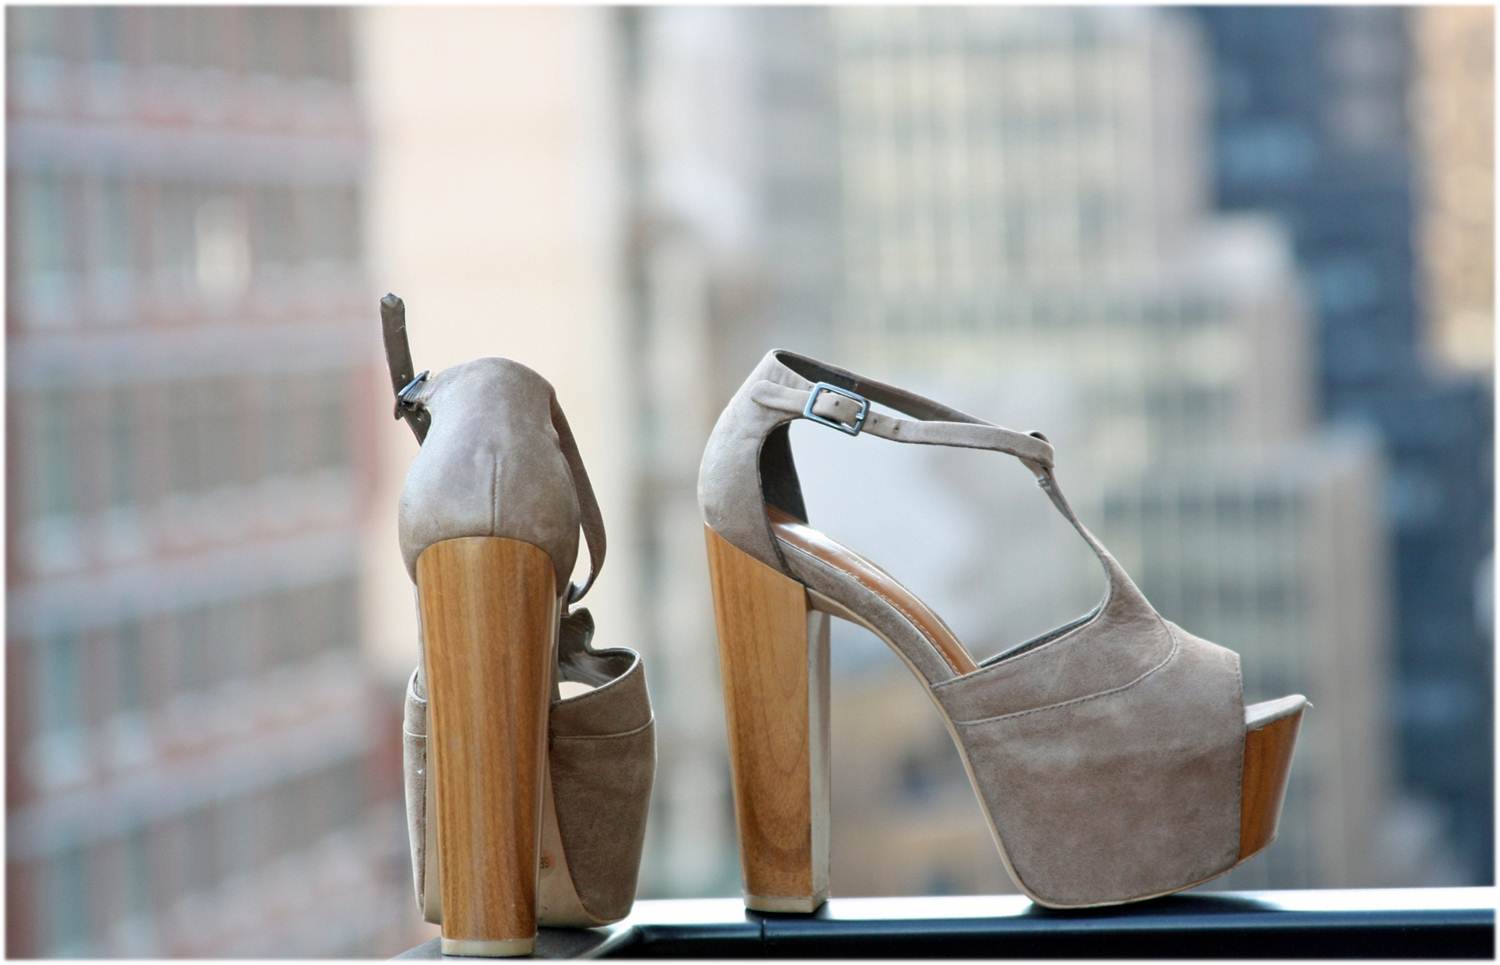 http://3.bp.blogspot.com/-sHbsG1VCy24/T9IJ4ER8h5I/AAAAAAAAB6I/lHYArk-NtrA/s1600/jessica+simpson+nude+wood+platform+heels+3.jpg